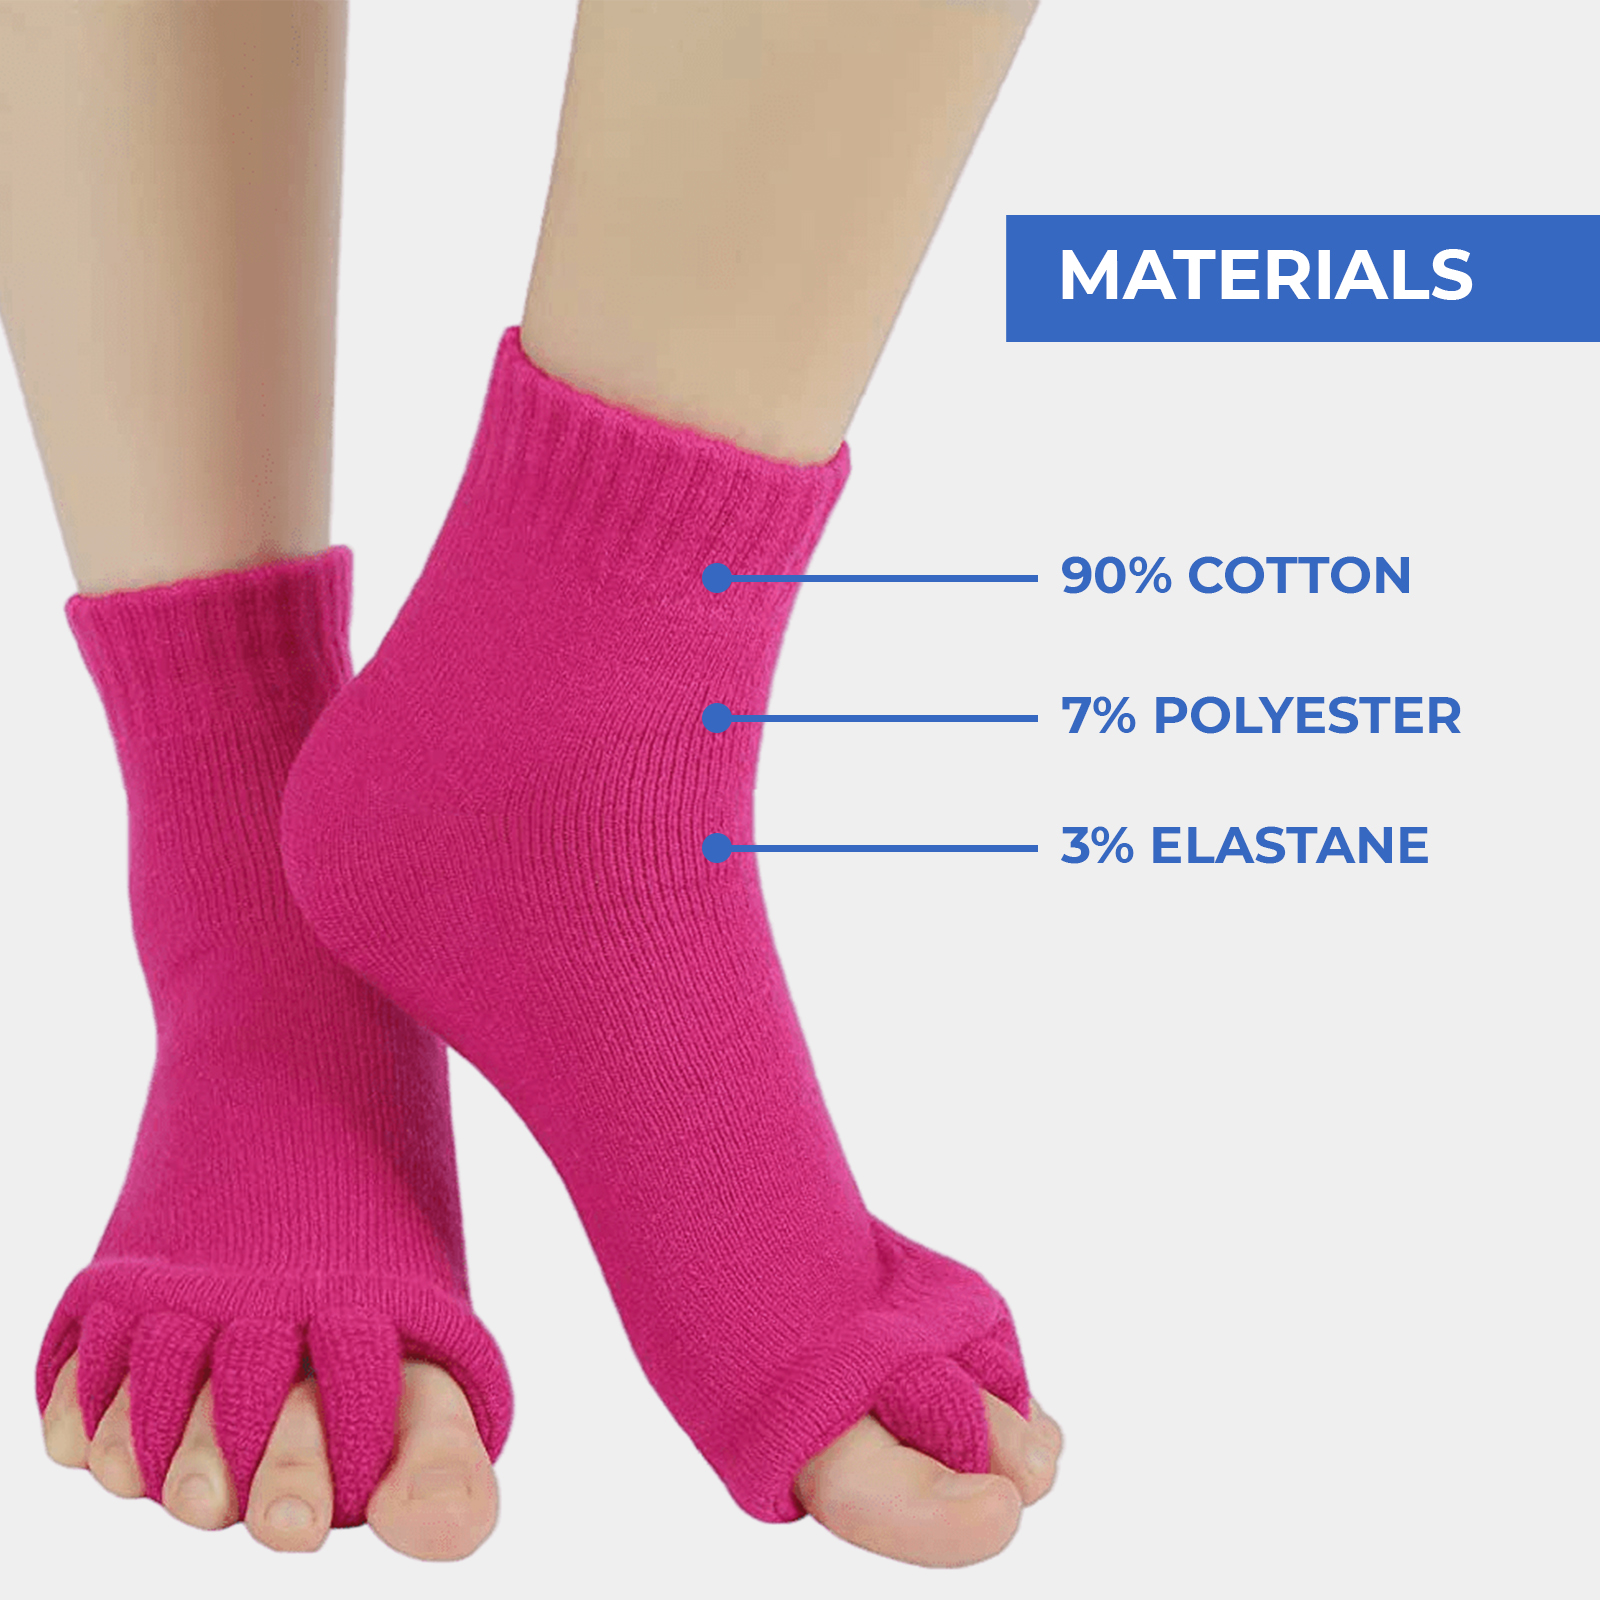 The Best Toe Separators Socks (in warranty registerations only)